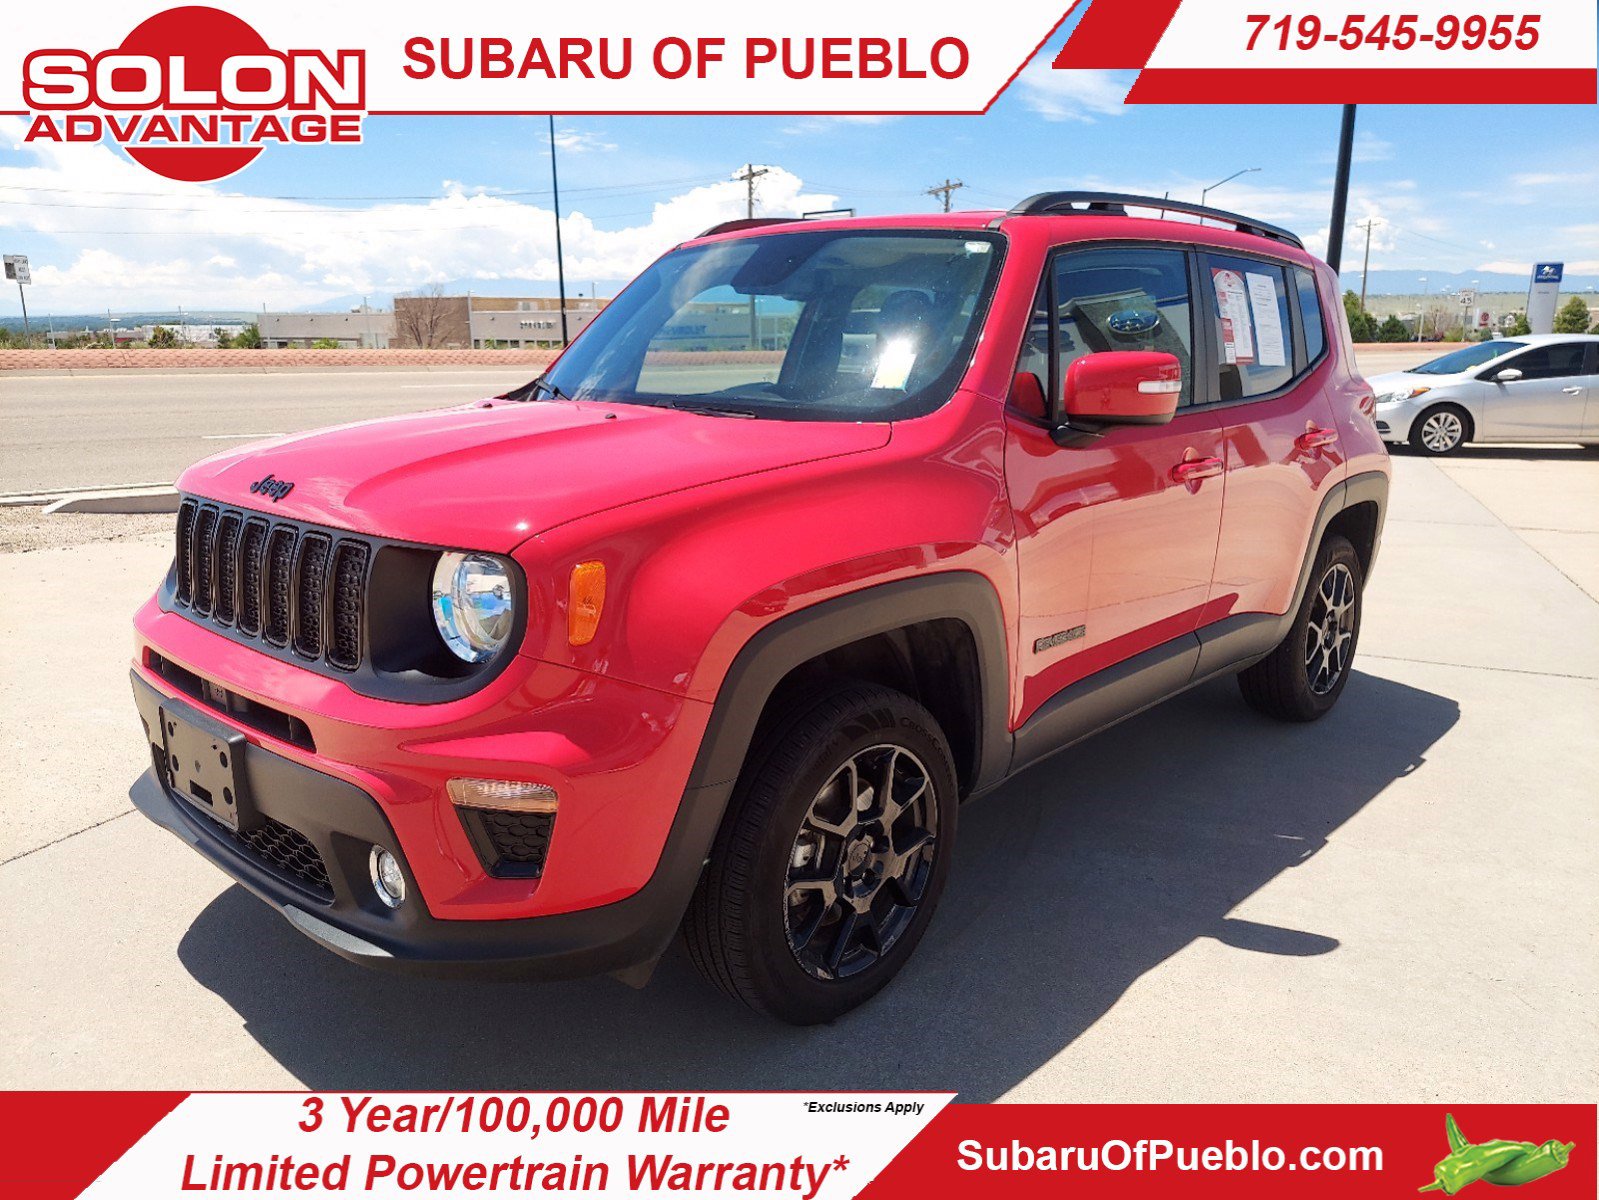 jeep dealership pueblo colorado